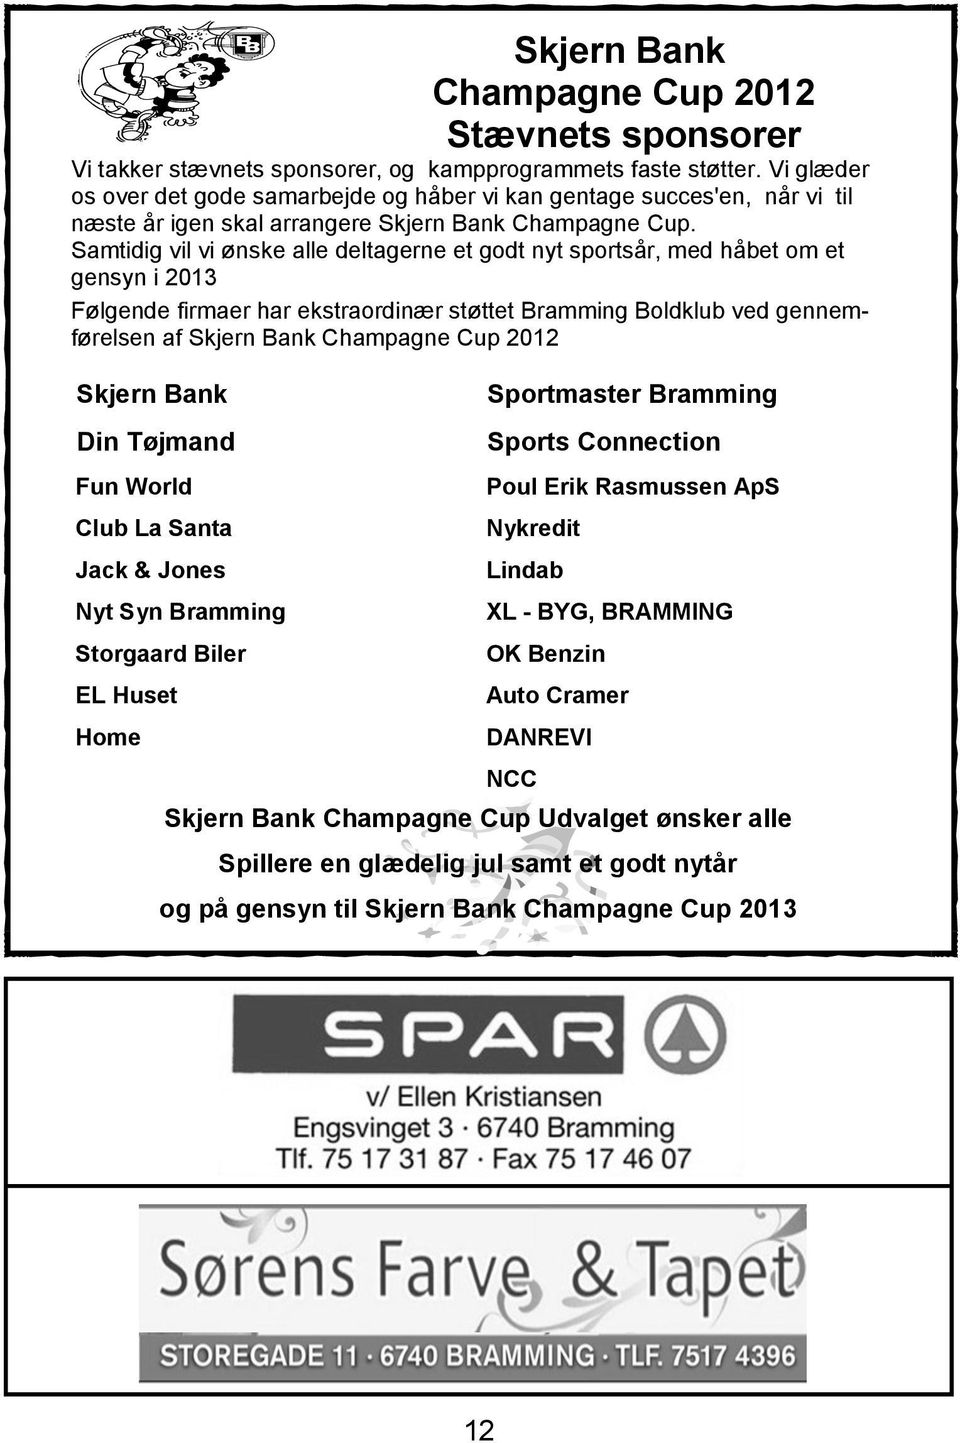 Samtidig vil vi ønske alle deltagerne et godt nyt sportsår, med håbet om et gensyn i 2013 Følgende firmaer har ekstraordinær støttet Bramming Boldklub ved gennemførelsen af Skjern Bank Champagne Cup